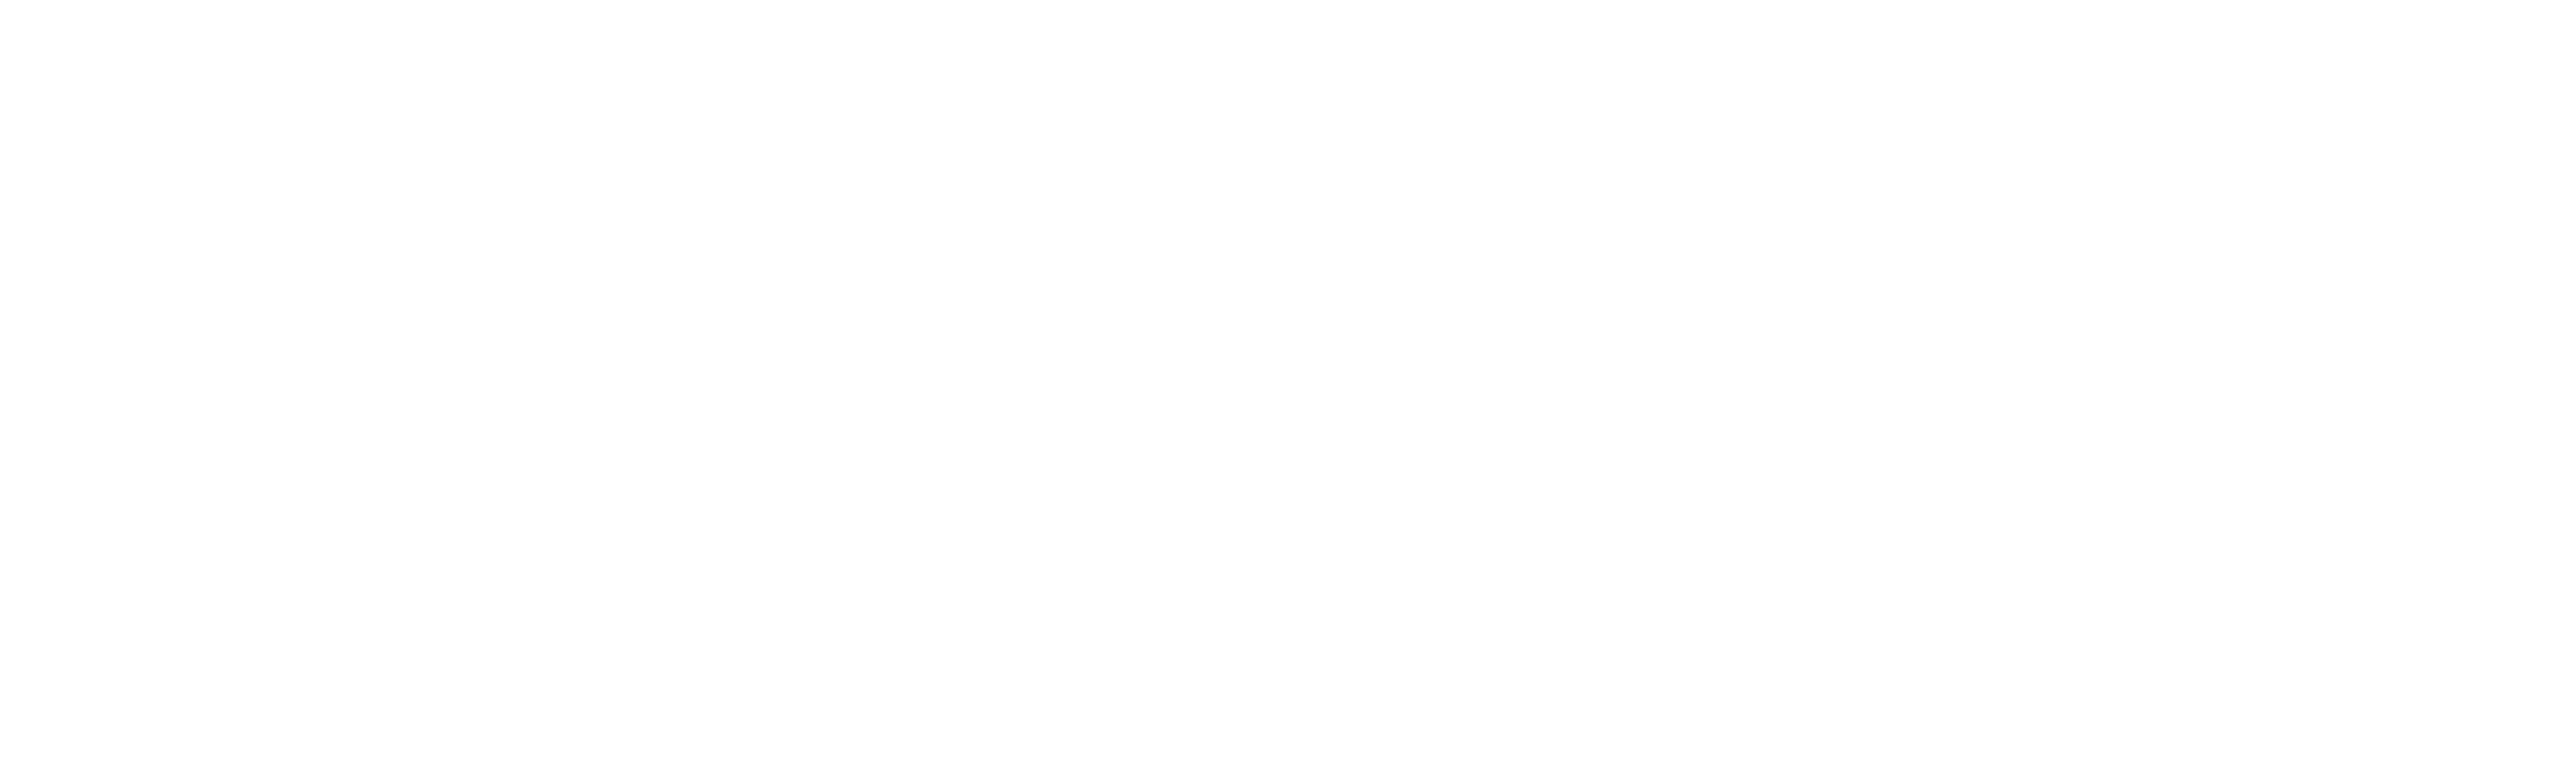 RightFiber Registered Logo - CMYK White